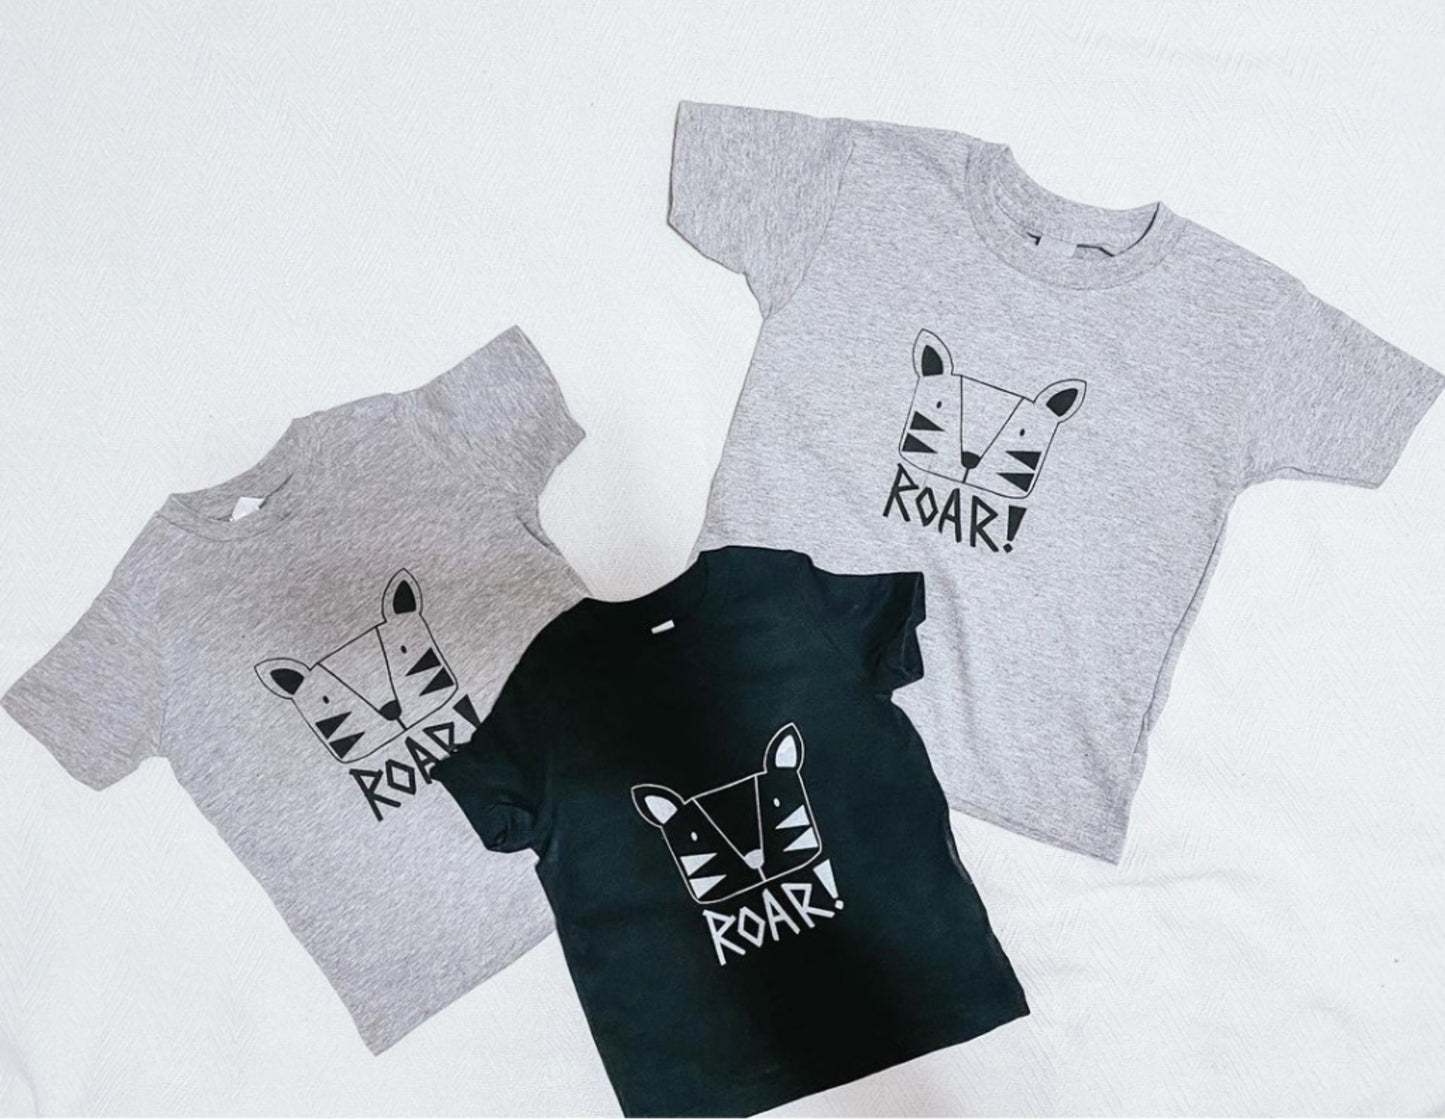 Kit + Puck Roar T-shirt